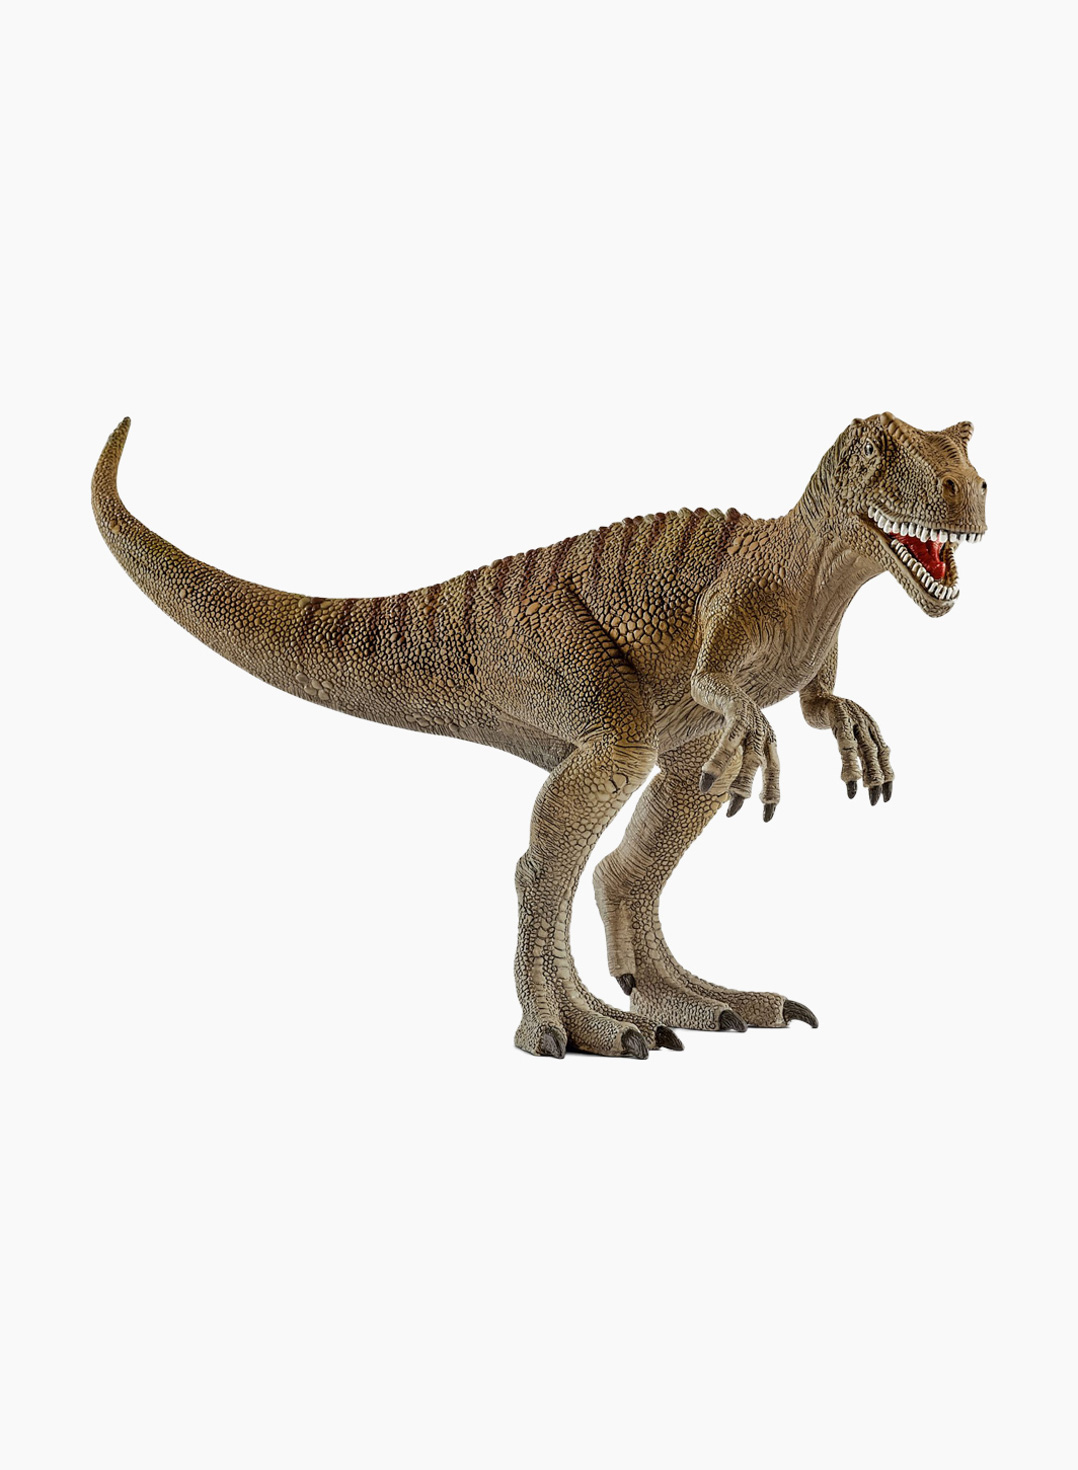 Schleich Dinosaur figurine Allosaurus